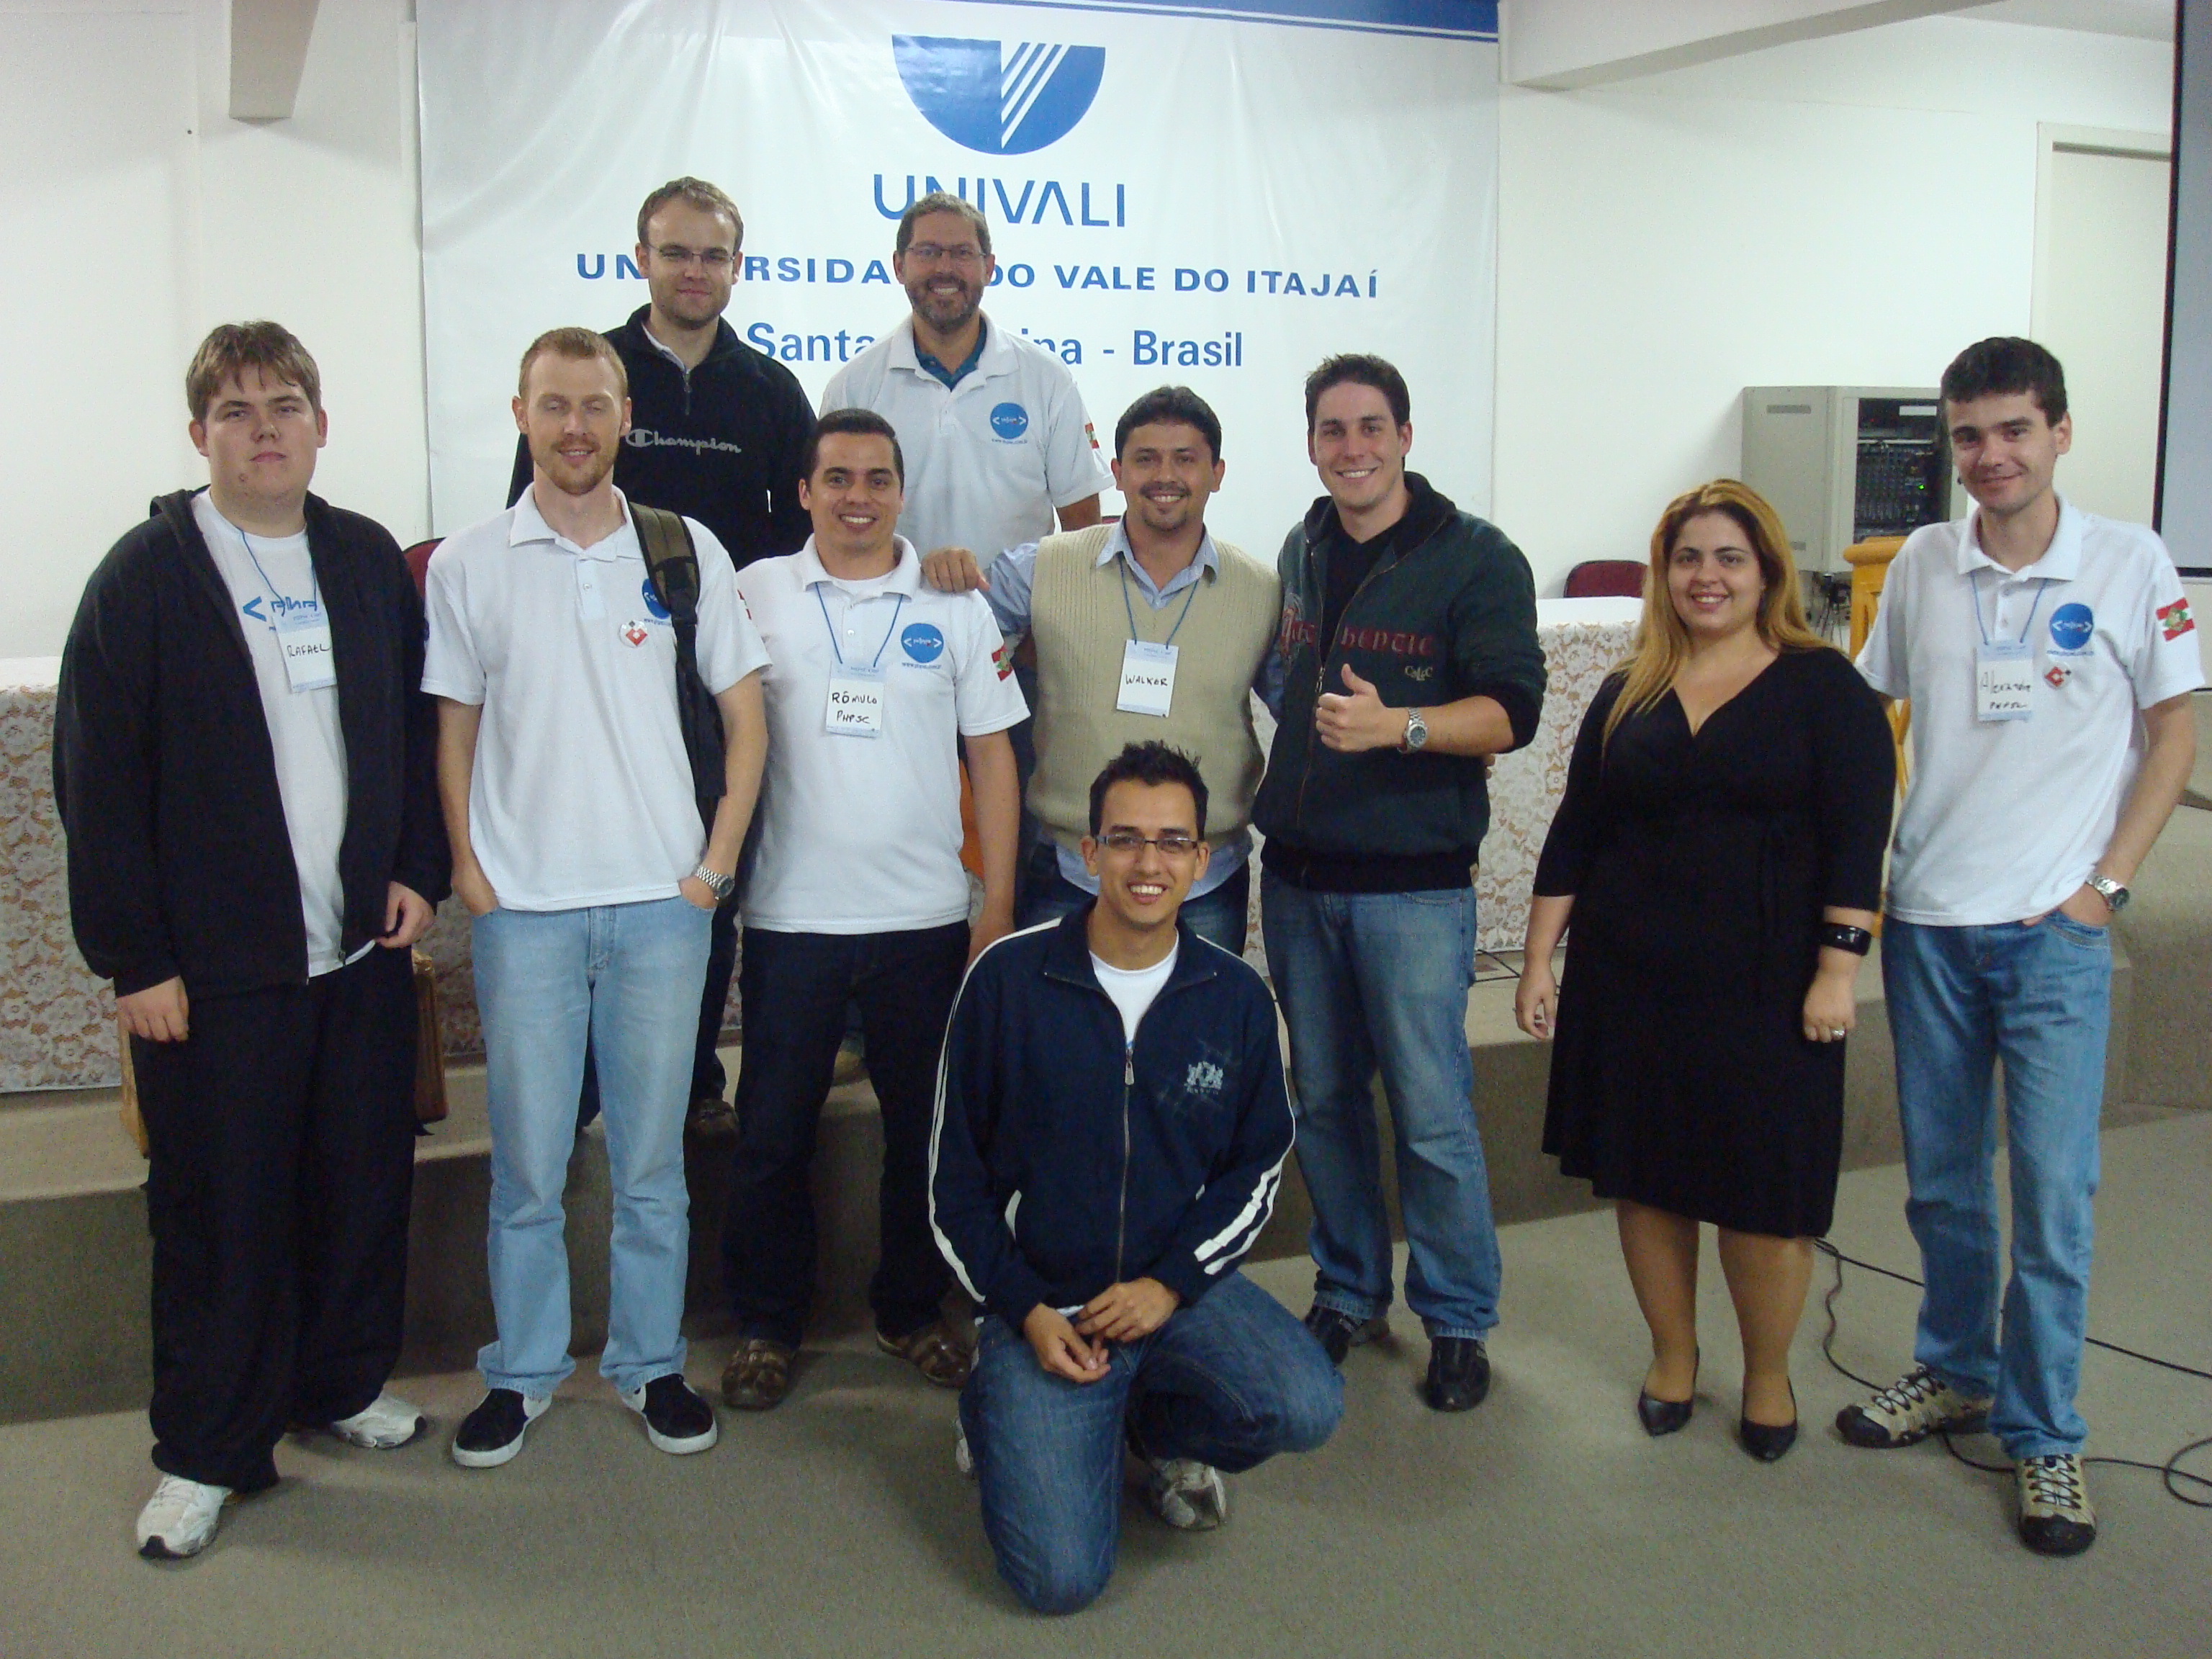 Foto dos participantes do PHPSC Conference 2009 na Univali em Itajaí